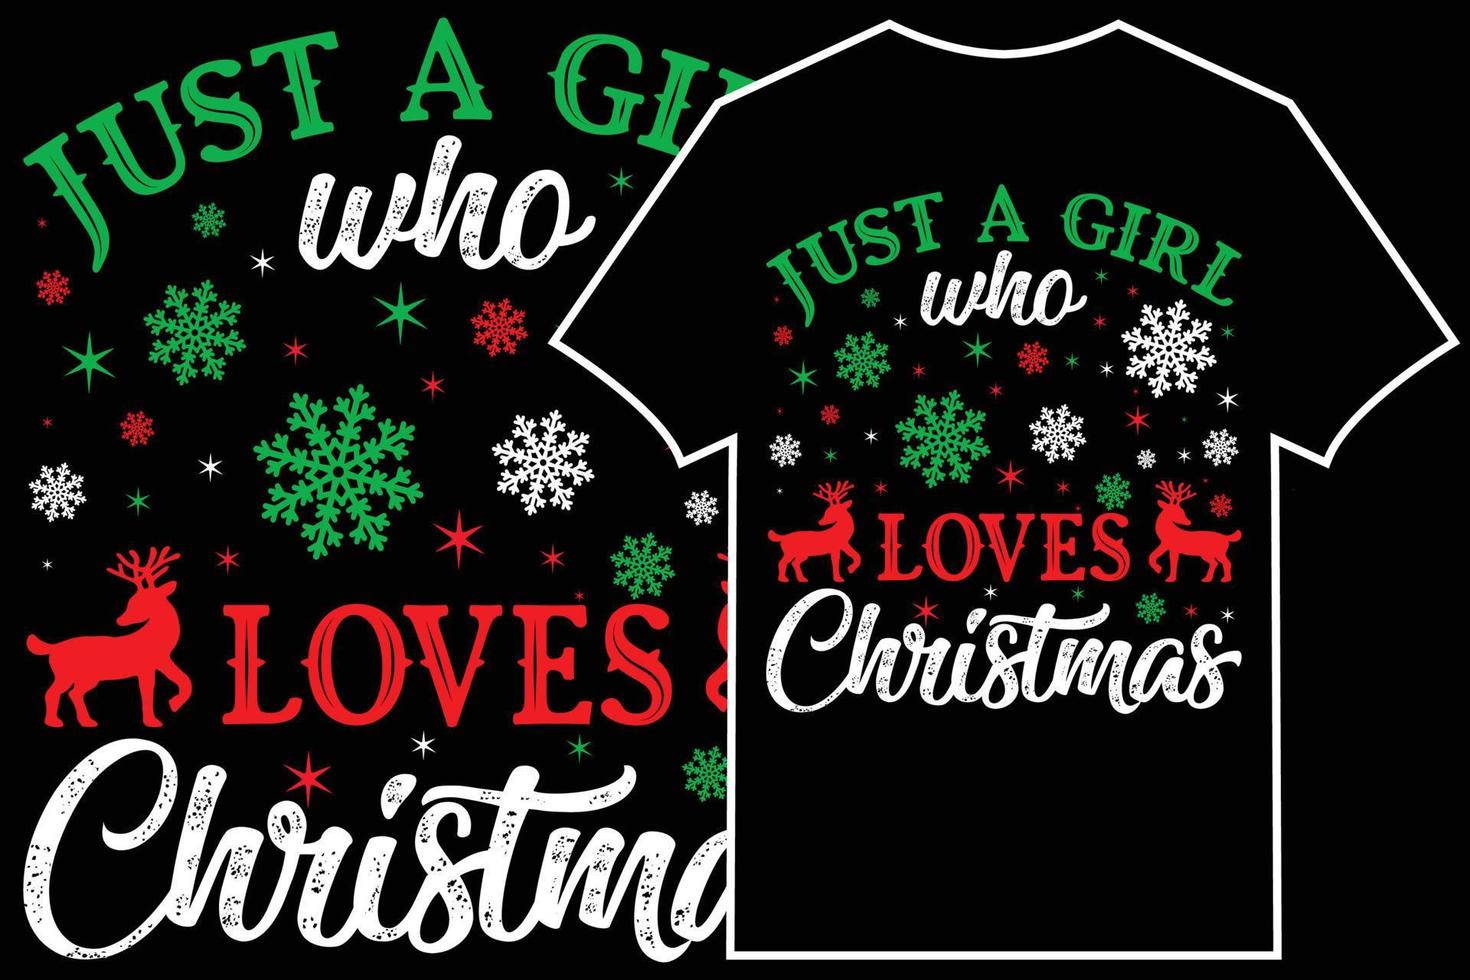 vetor de design de camiseta de natal. apenas uma garota que ama o natal